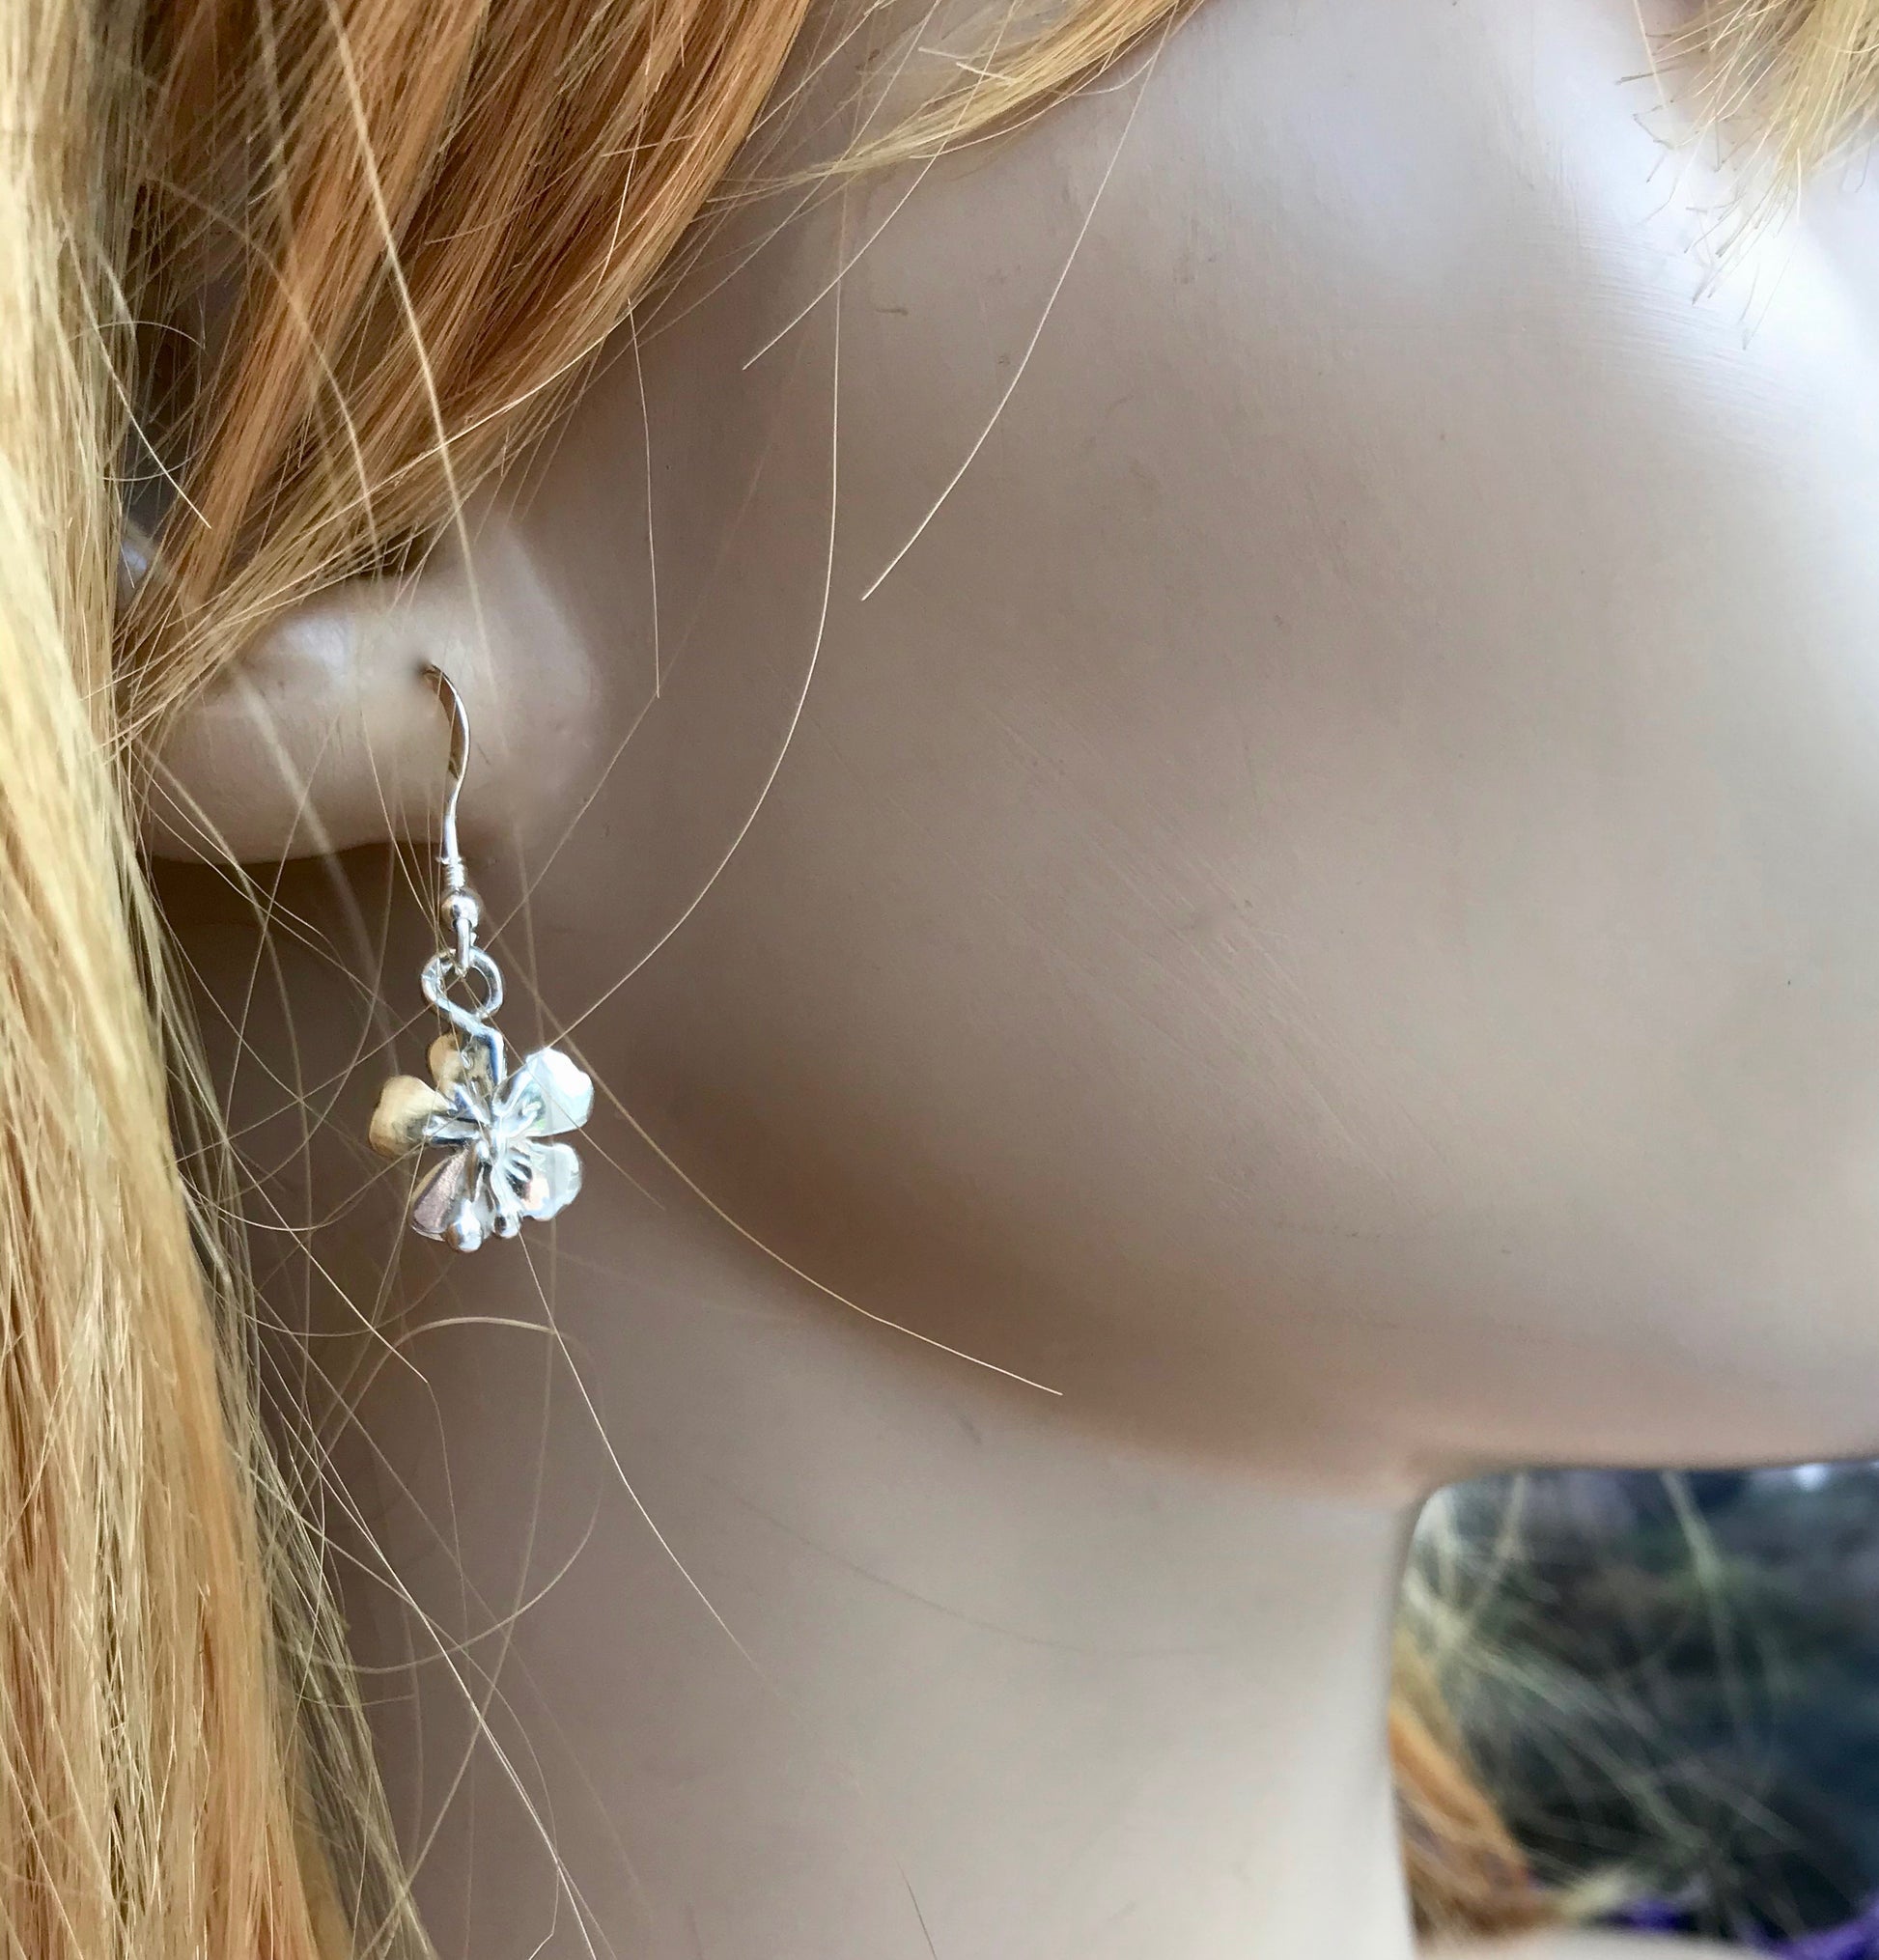 Hibiscus flower earrings